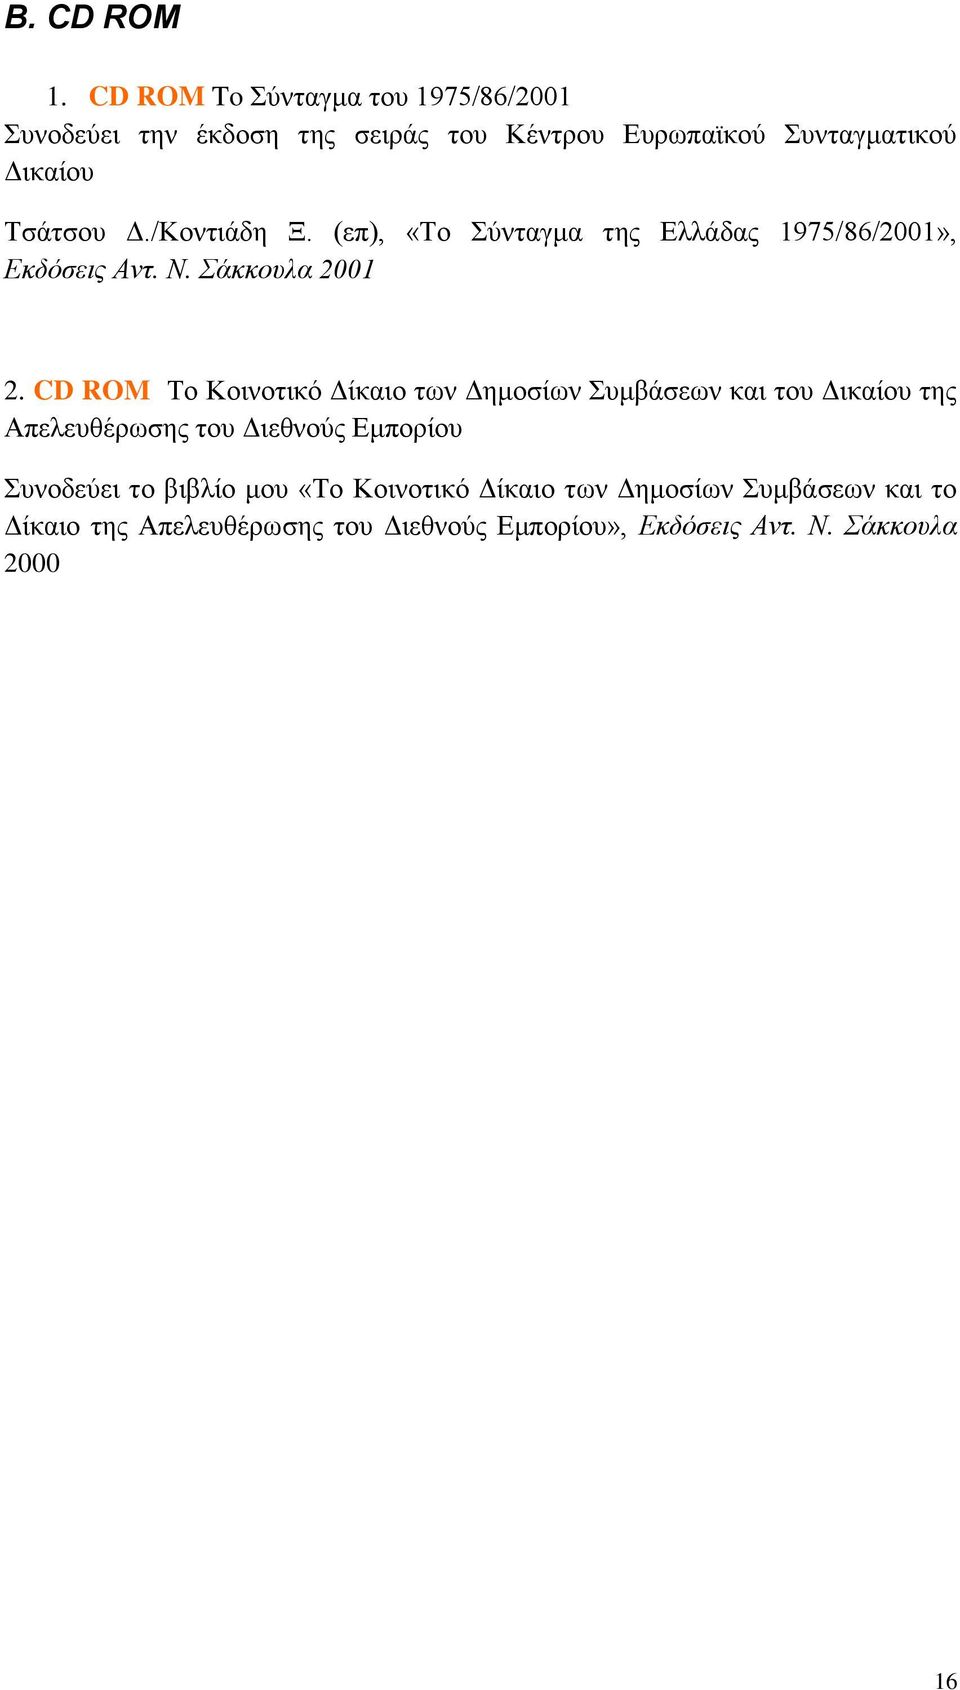 /Κοντιάδη Ξ. (επ), «Το Σύνταγμα της Ελλάδας 1975/86/2001», Εκδόσεις Αντ. Ν. Σάκκουλα 2001 2.